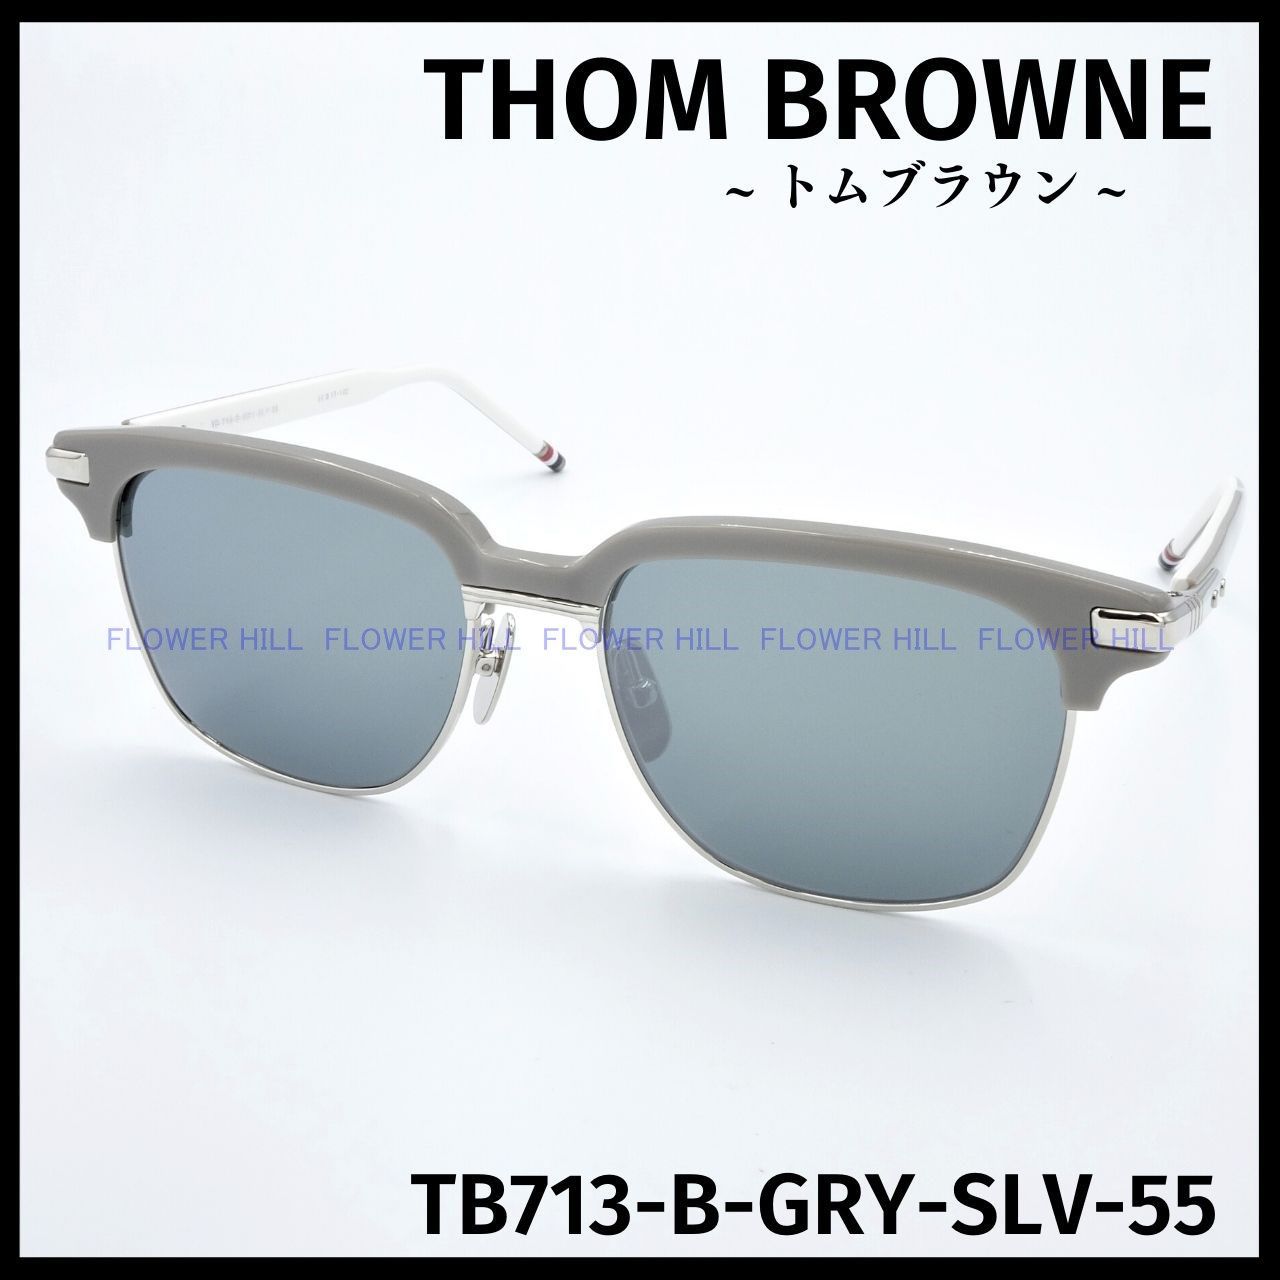 THOM BROWNE トムブラウン サングラス TB-718-B GRY-SLV グレー・シルバー サーモントブロー 日本製 メンズ レディース